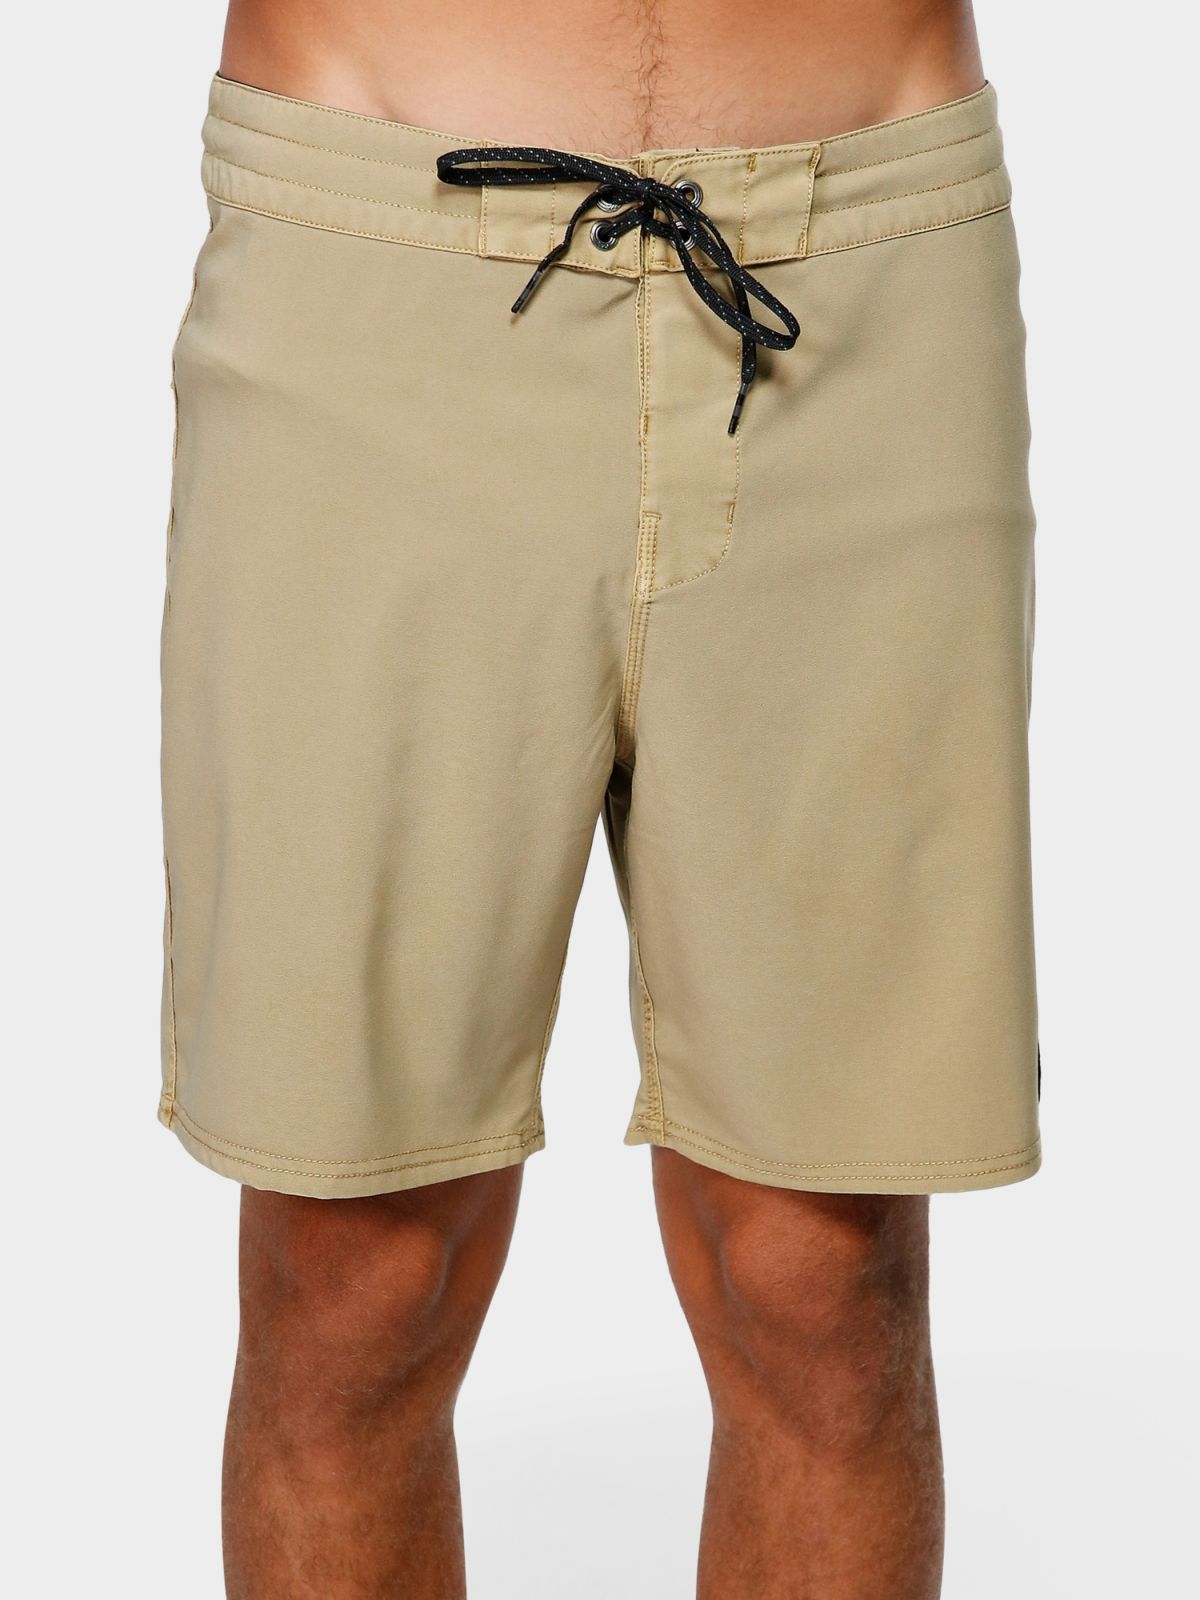  מכנסי בגד ים עם פאץ' לוגו של BILLABONG